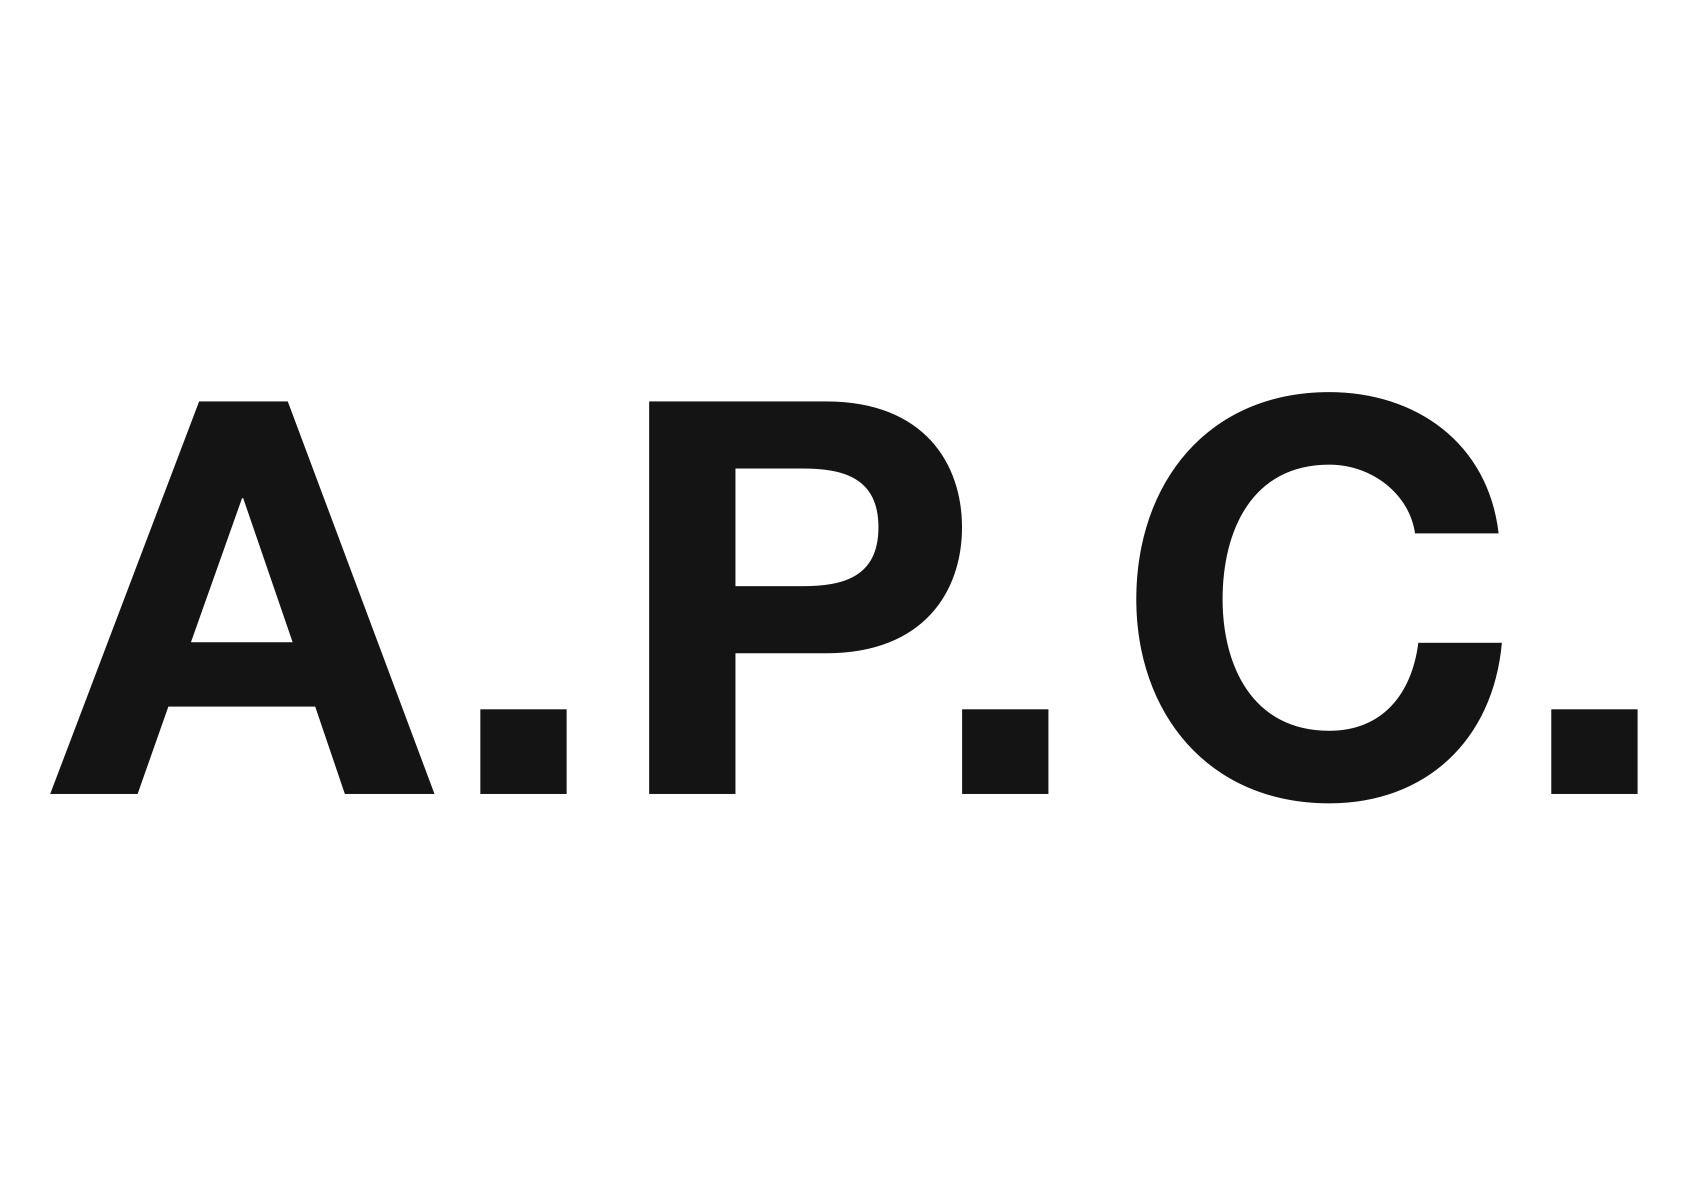 Jean Shop Logo - A.P.C | The Denim Shop - Singapore Online Denim Shop